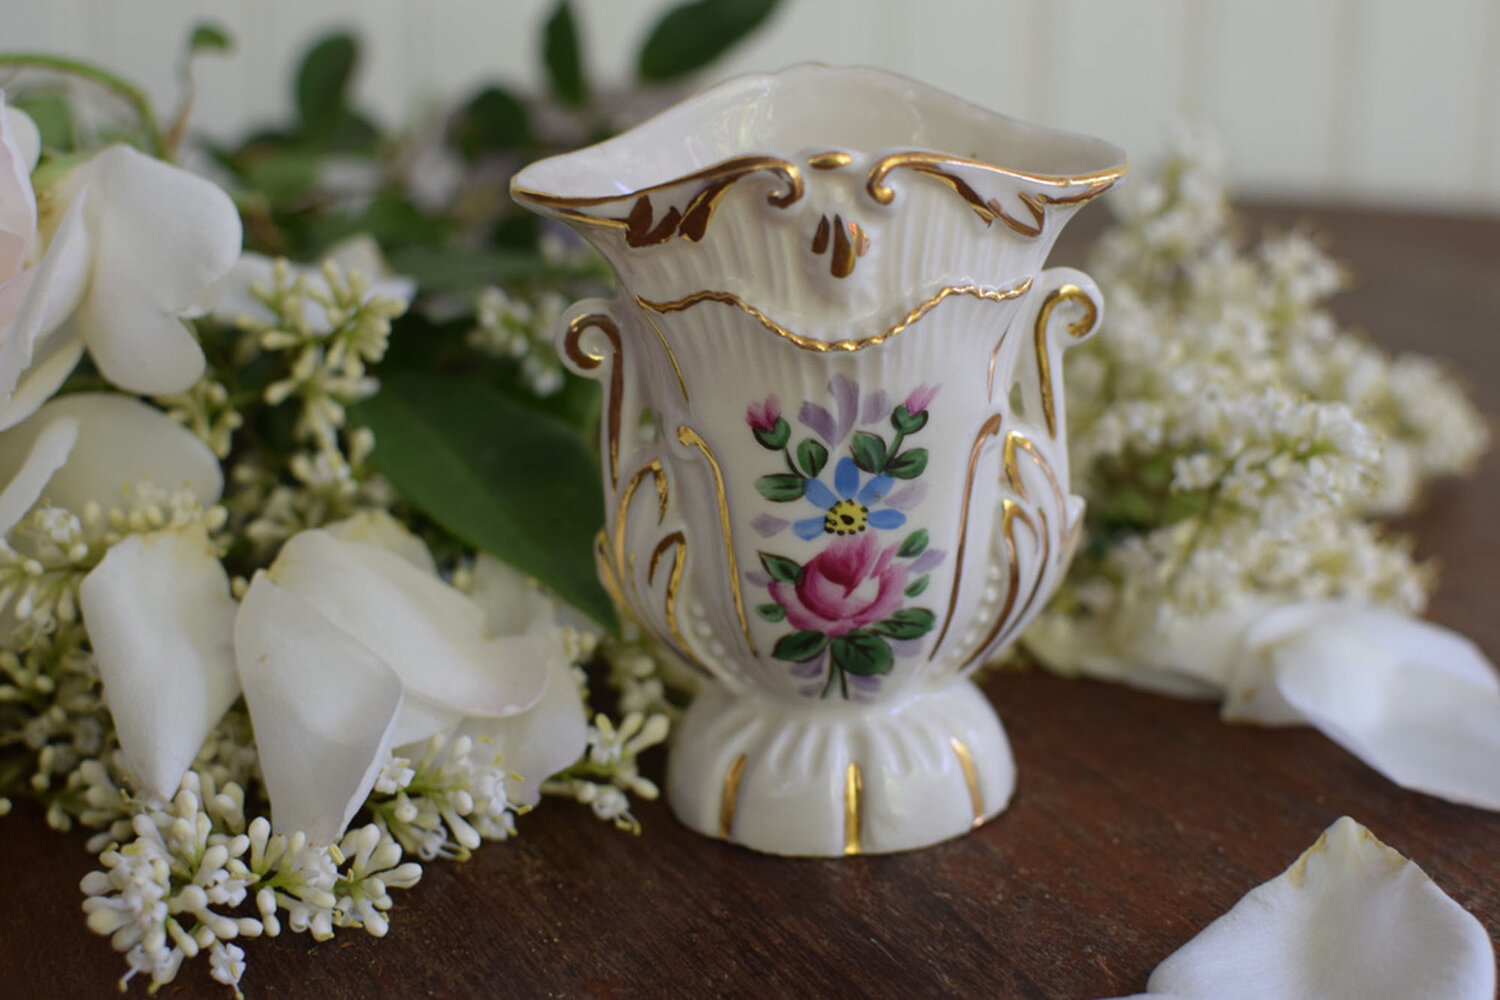 Antique and Vintage Porcelain, Vintage Antique Plates, Vases, Perfume Bottles — French Antiques Vintage Decor French Linens au Lait Bowls and more